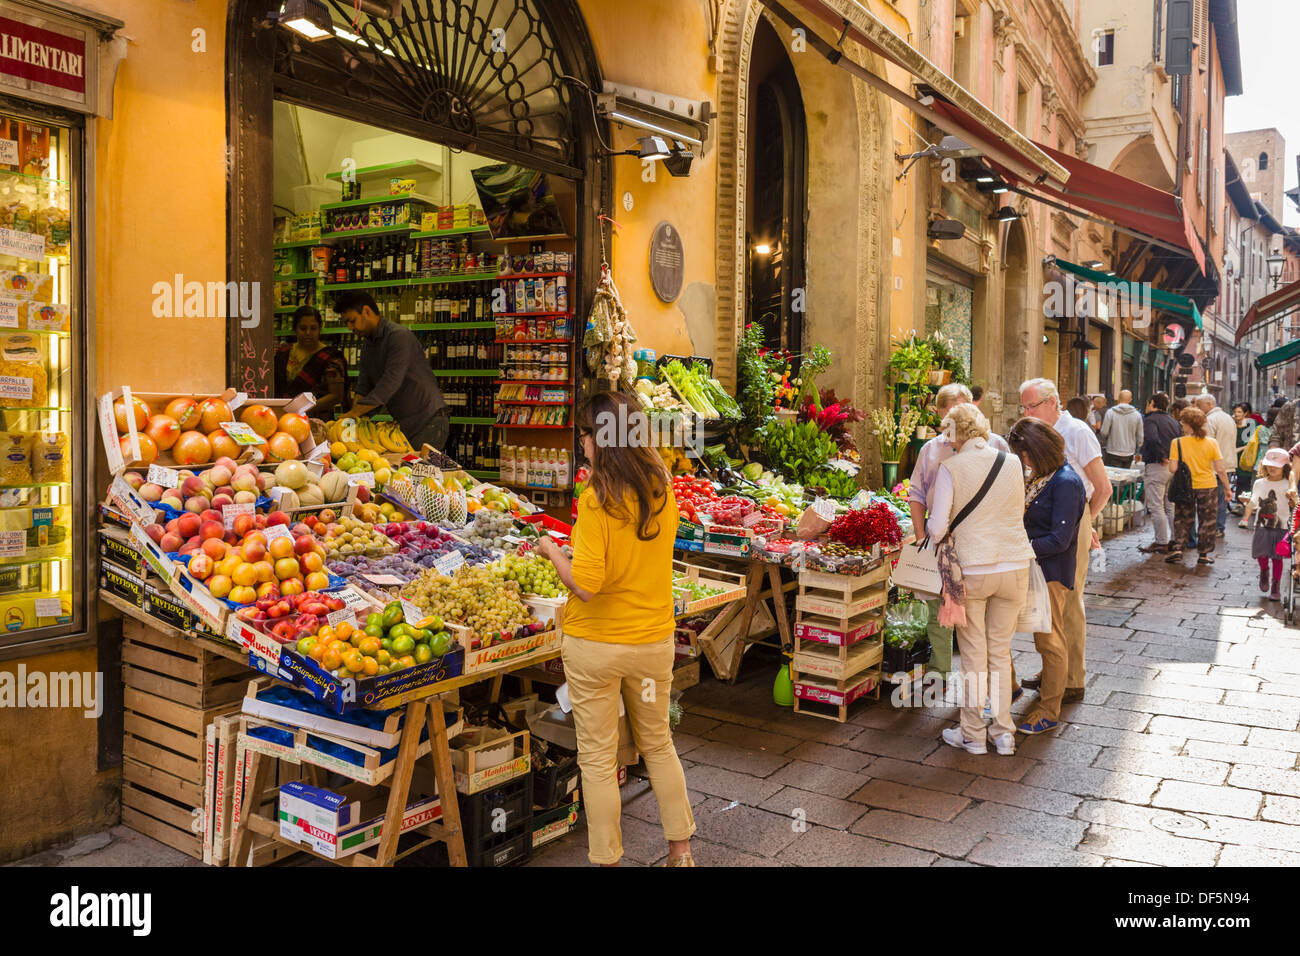 La frutta e la verdura al di fuori di un negozio in Via Drapperie nel centro storico della città, Bologna, Emilia Romagna, Italia Foto Stock